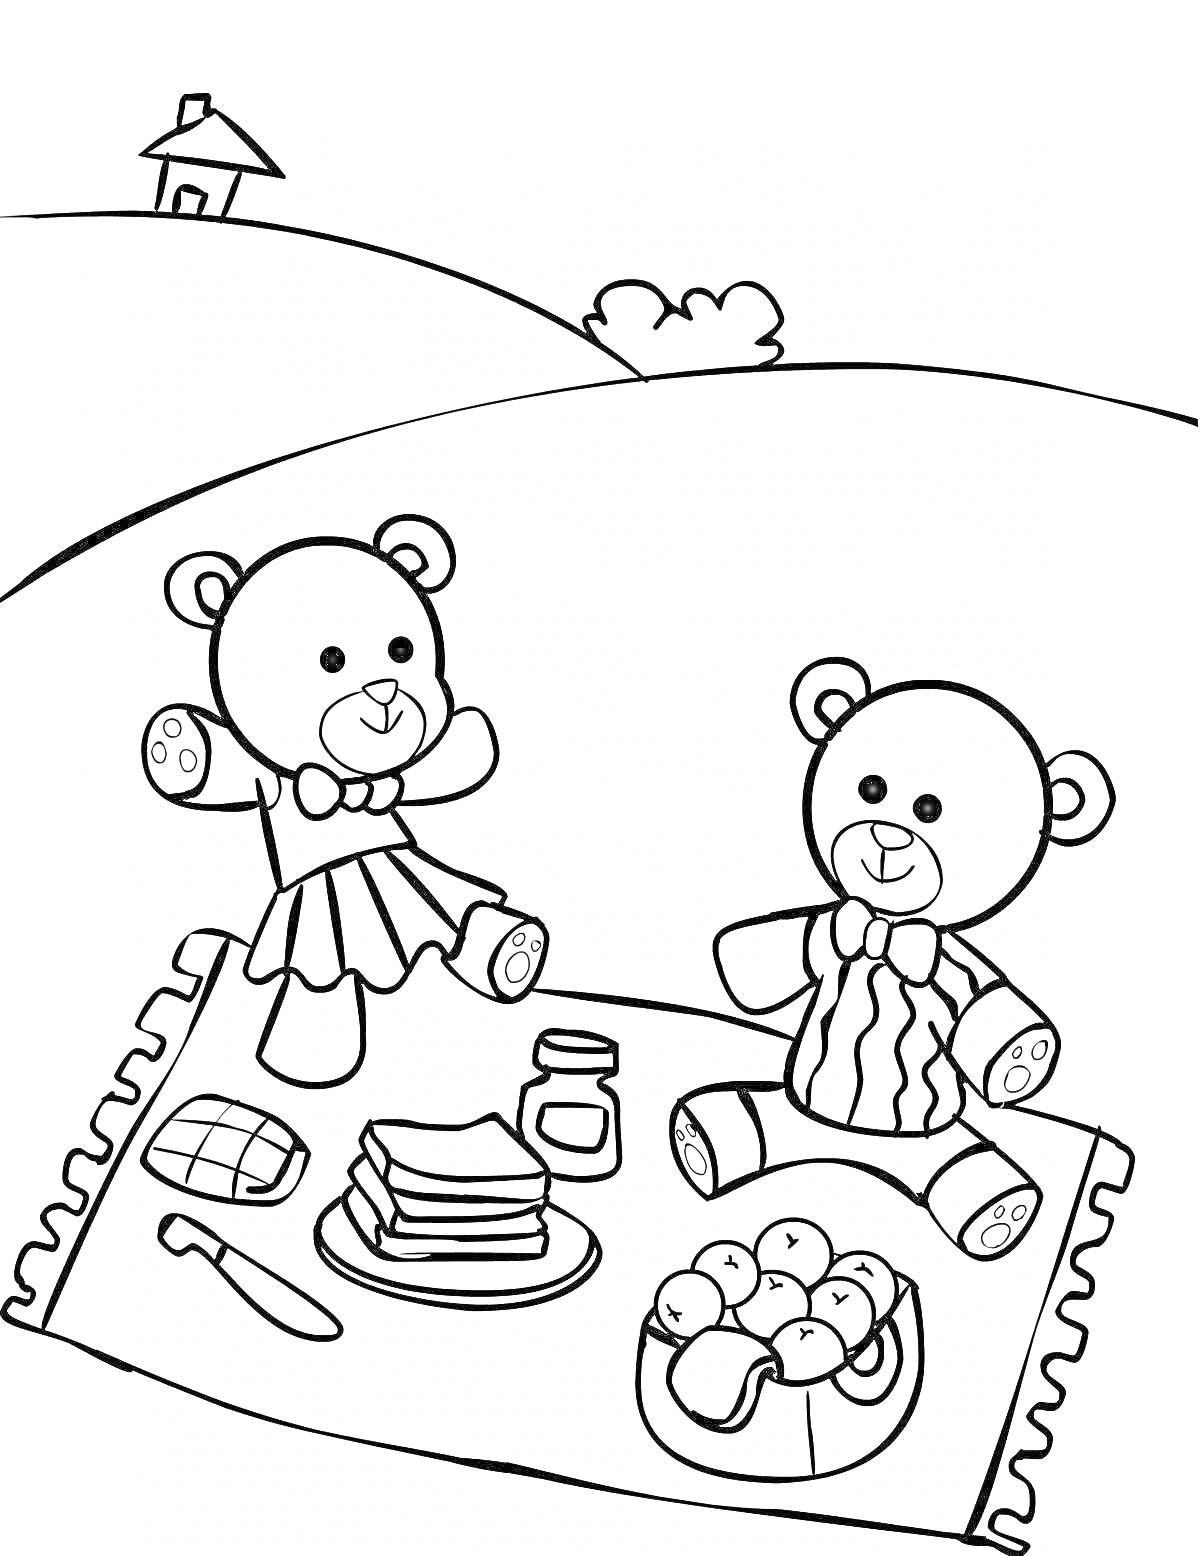 Раскраска Два медведя на пикнике с едой на покрывале, дом на холме